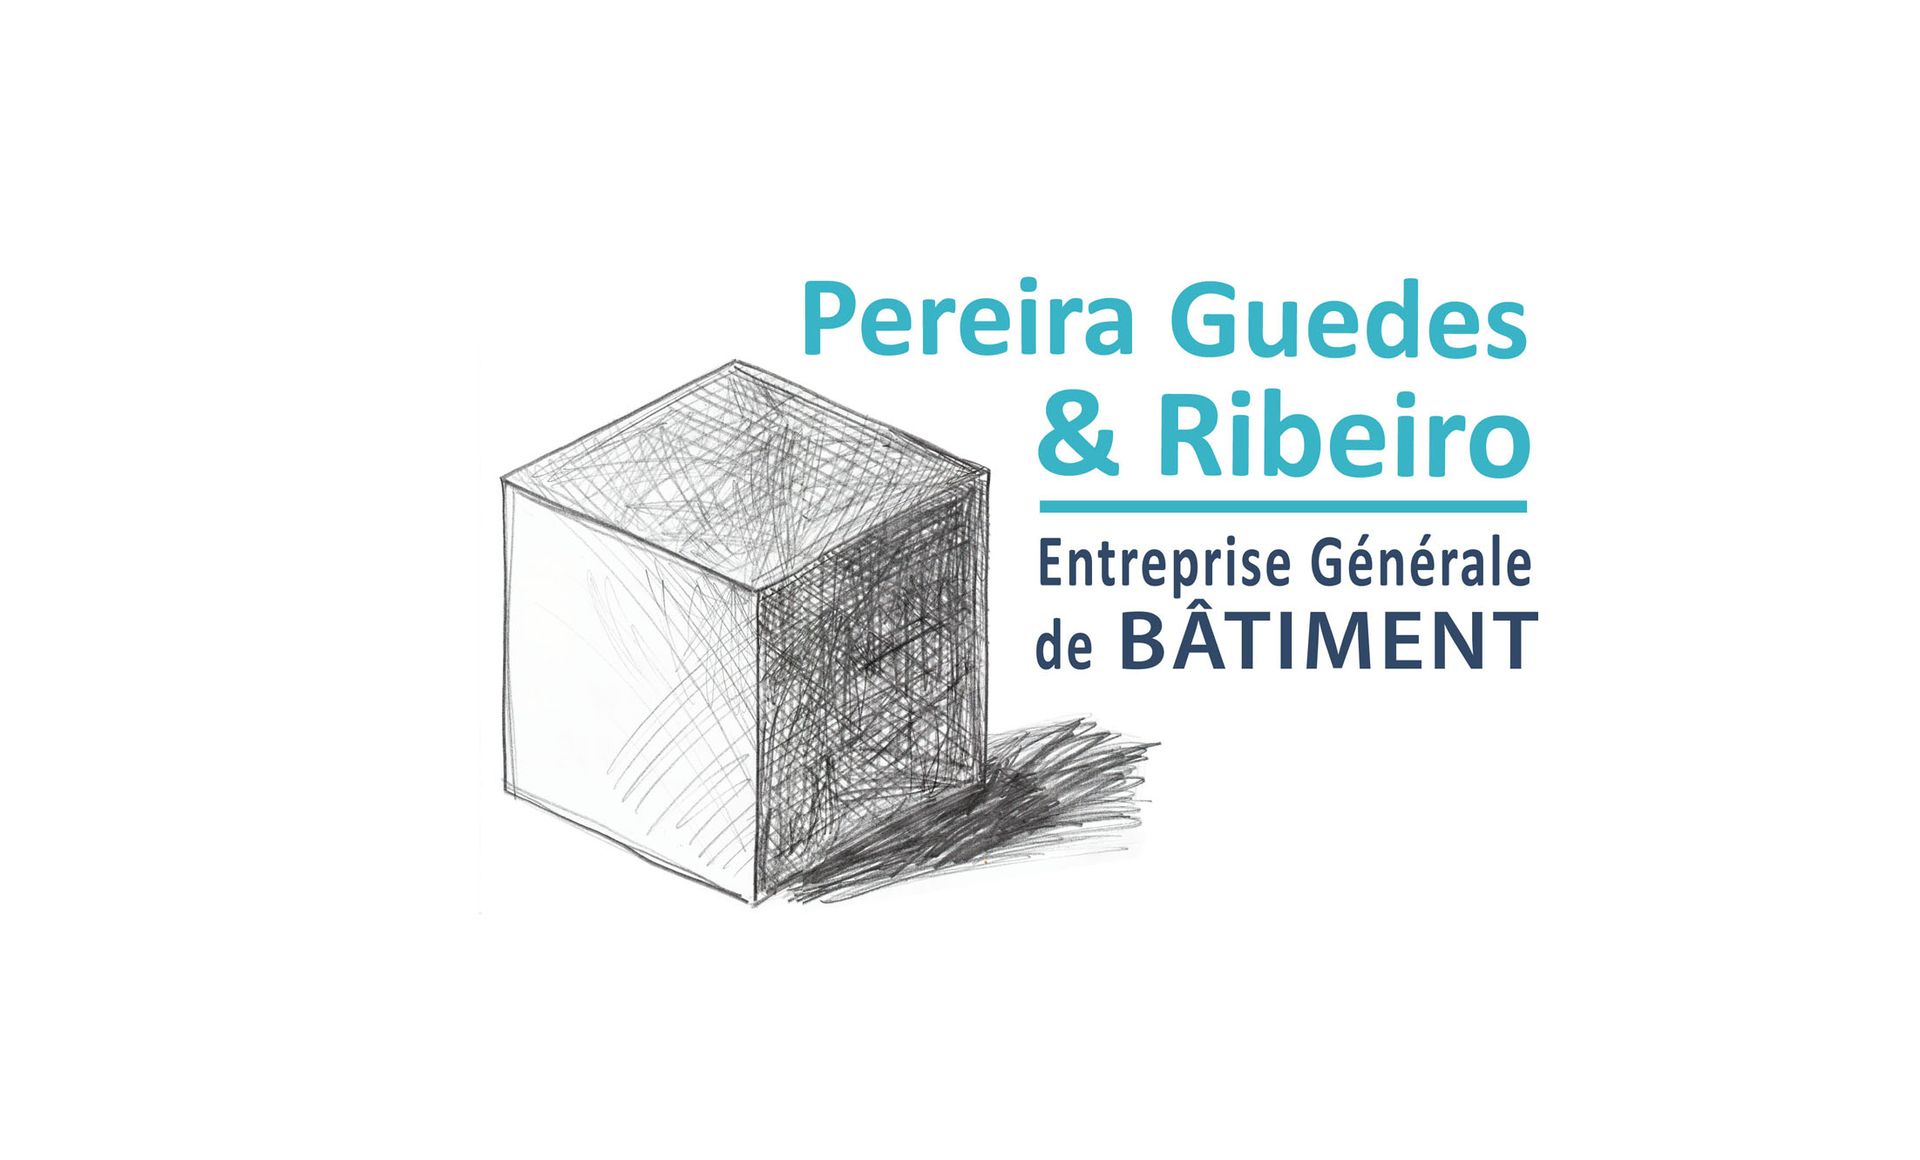 Entreprise Générale Pereira Guedes & Ribeiro entreprise générale de bâtiment